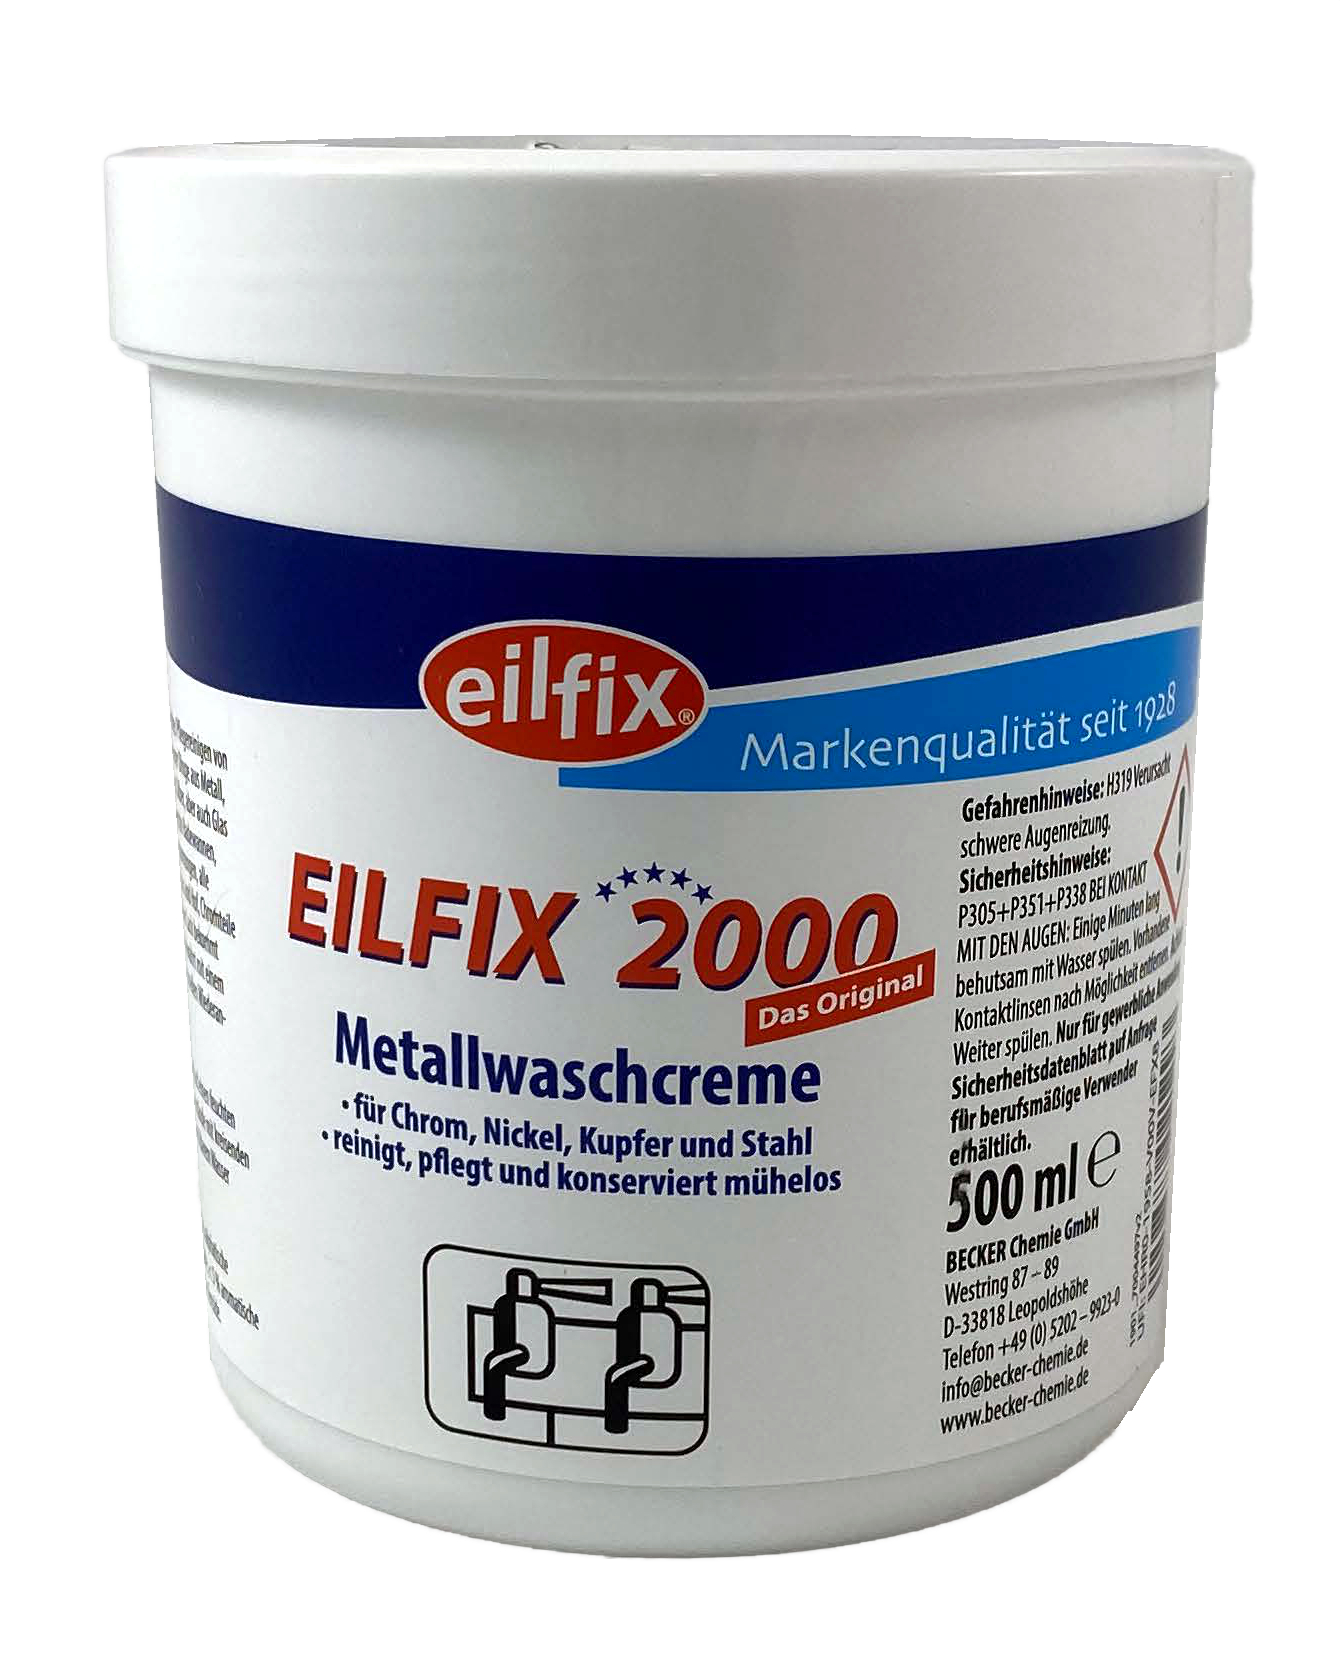 Eilfix 2000 Metallwaschcreme 500 ml Dose